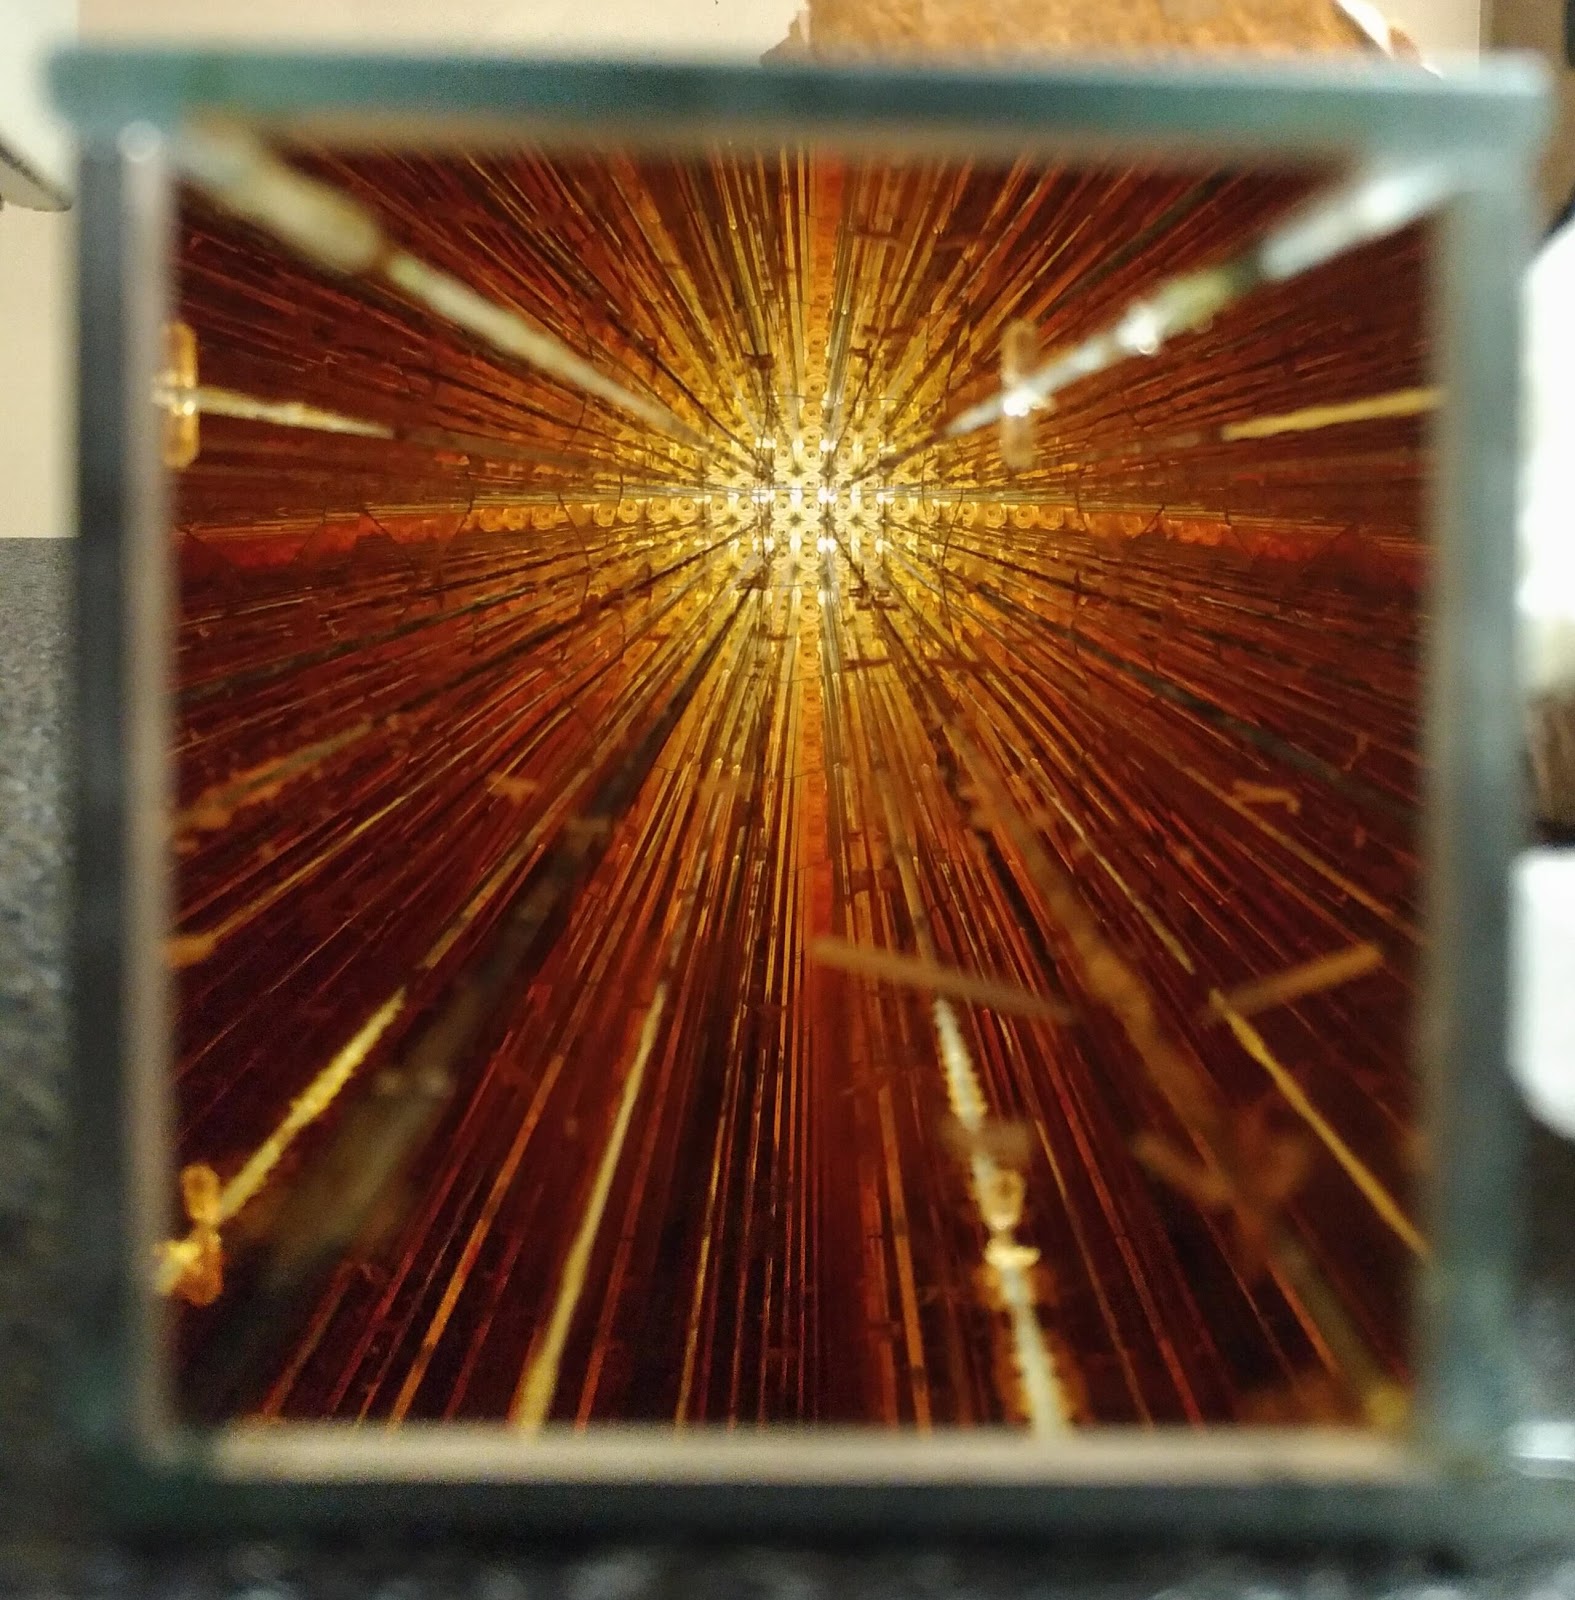 Foto del collimatore in rame realizzato nell'ambito dell'esperimento FAMU (Fisica degli Atomi MUonici) per dei test di collimazione del fascio di muoni.